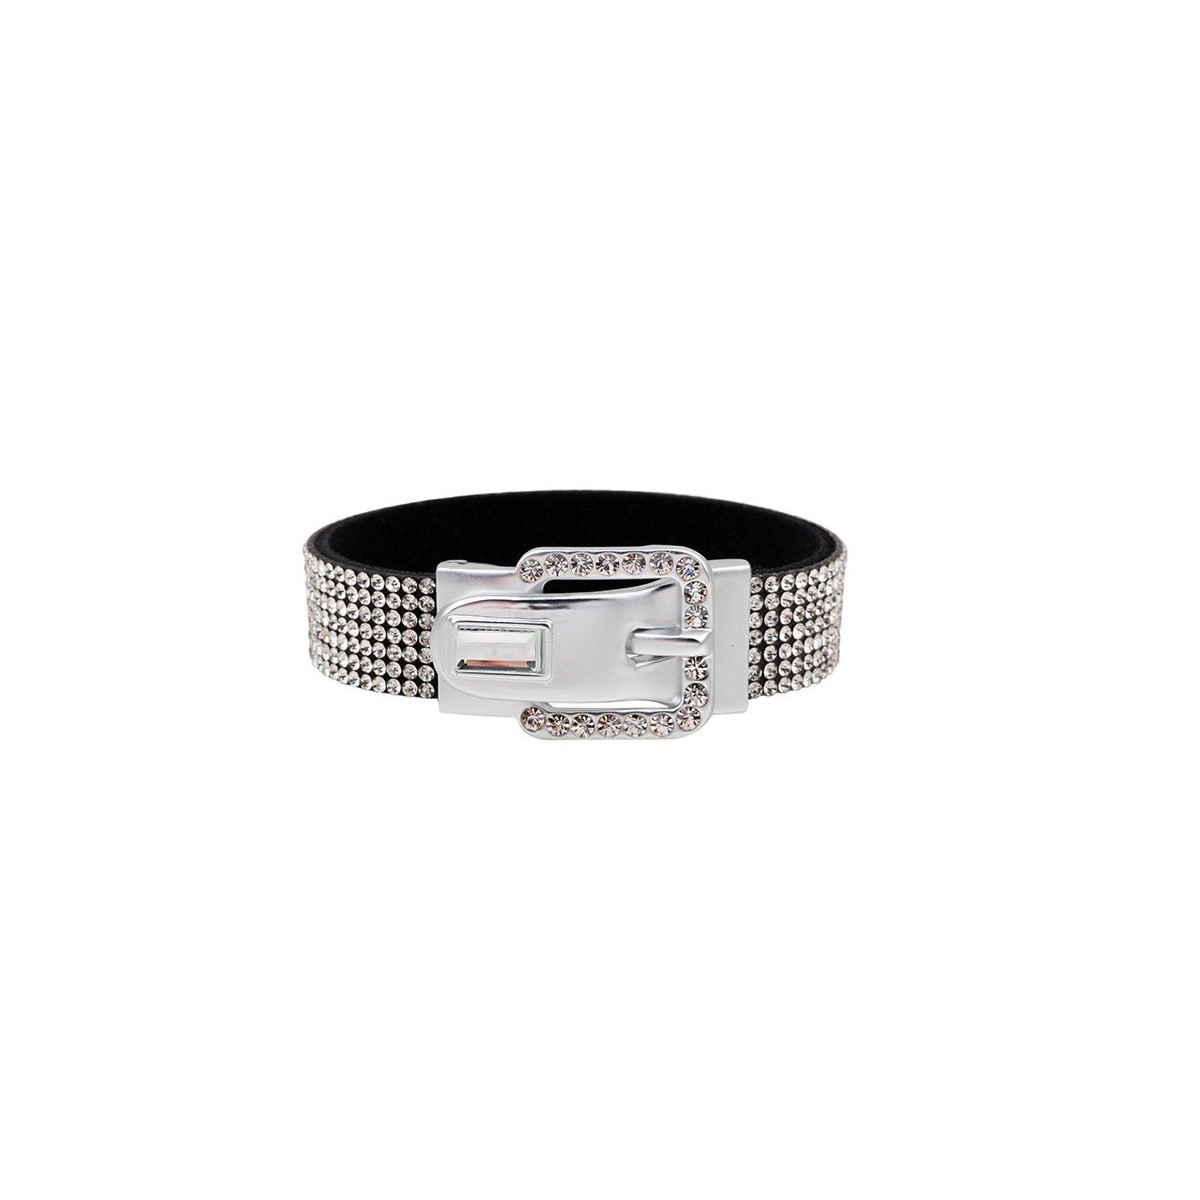 Luxury belt bracelet